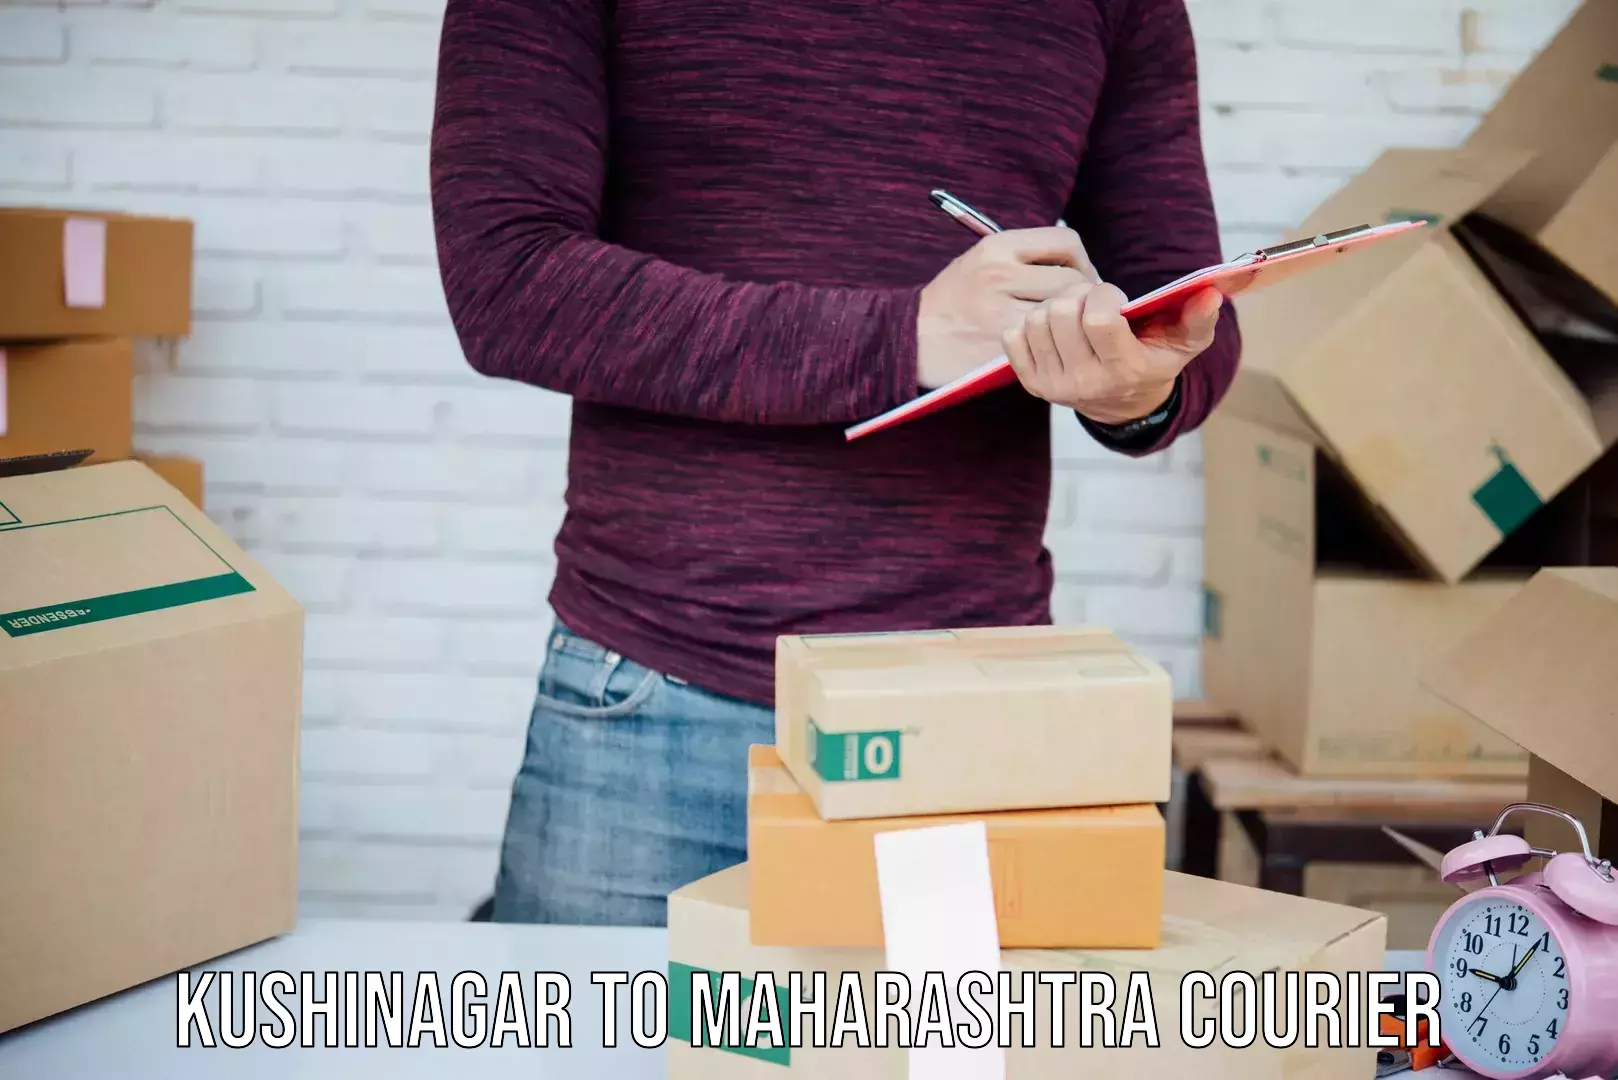 Urgent courier needs Kushinagar to Maharashtra